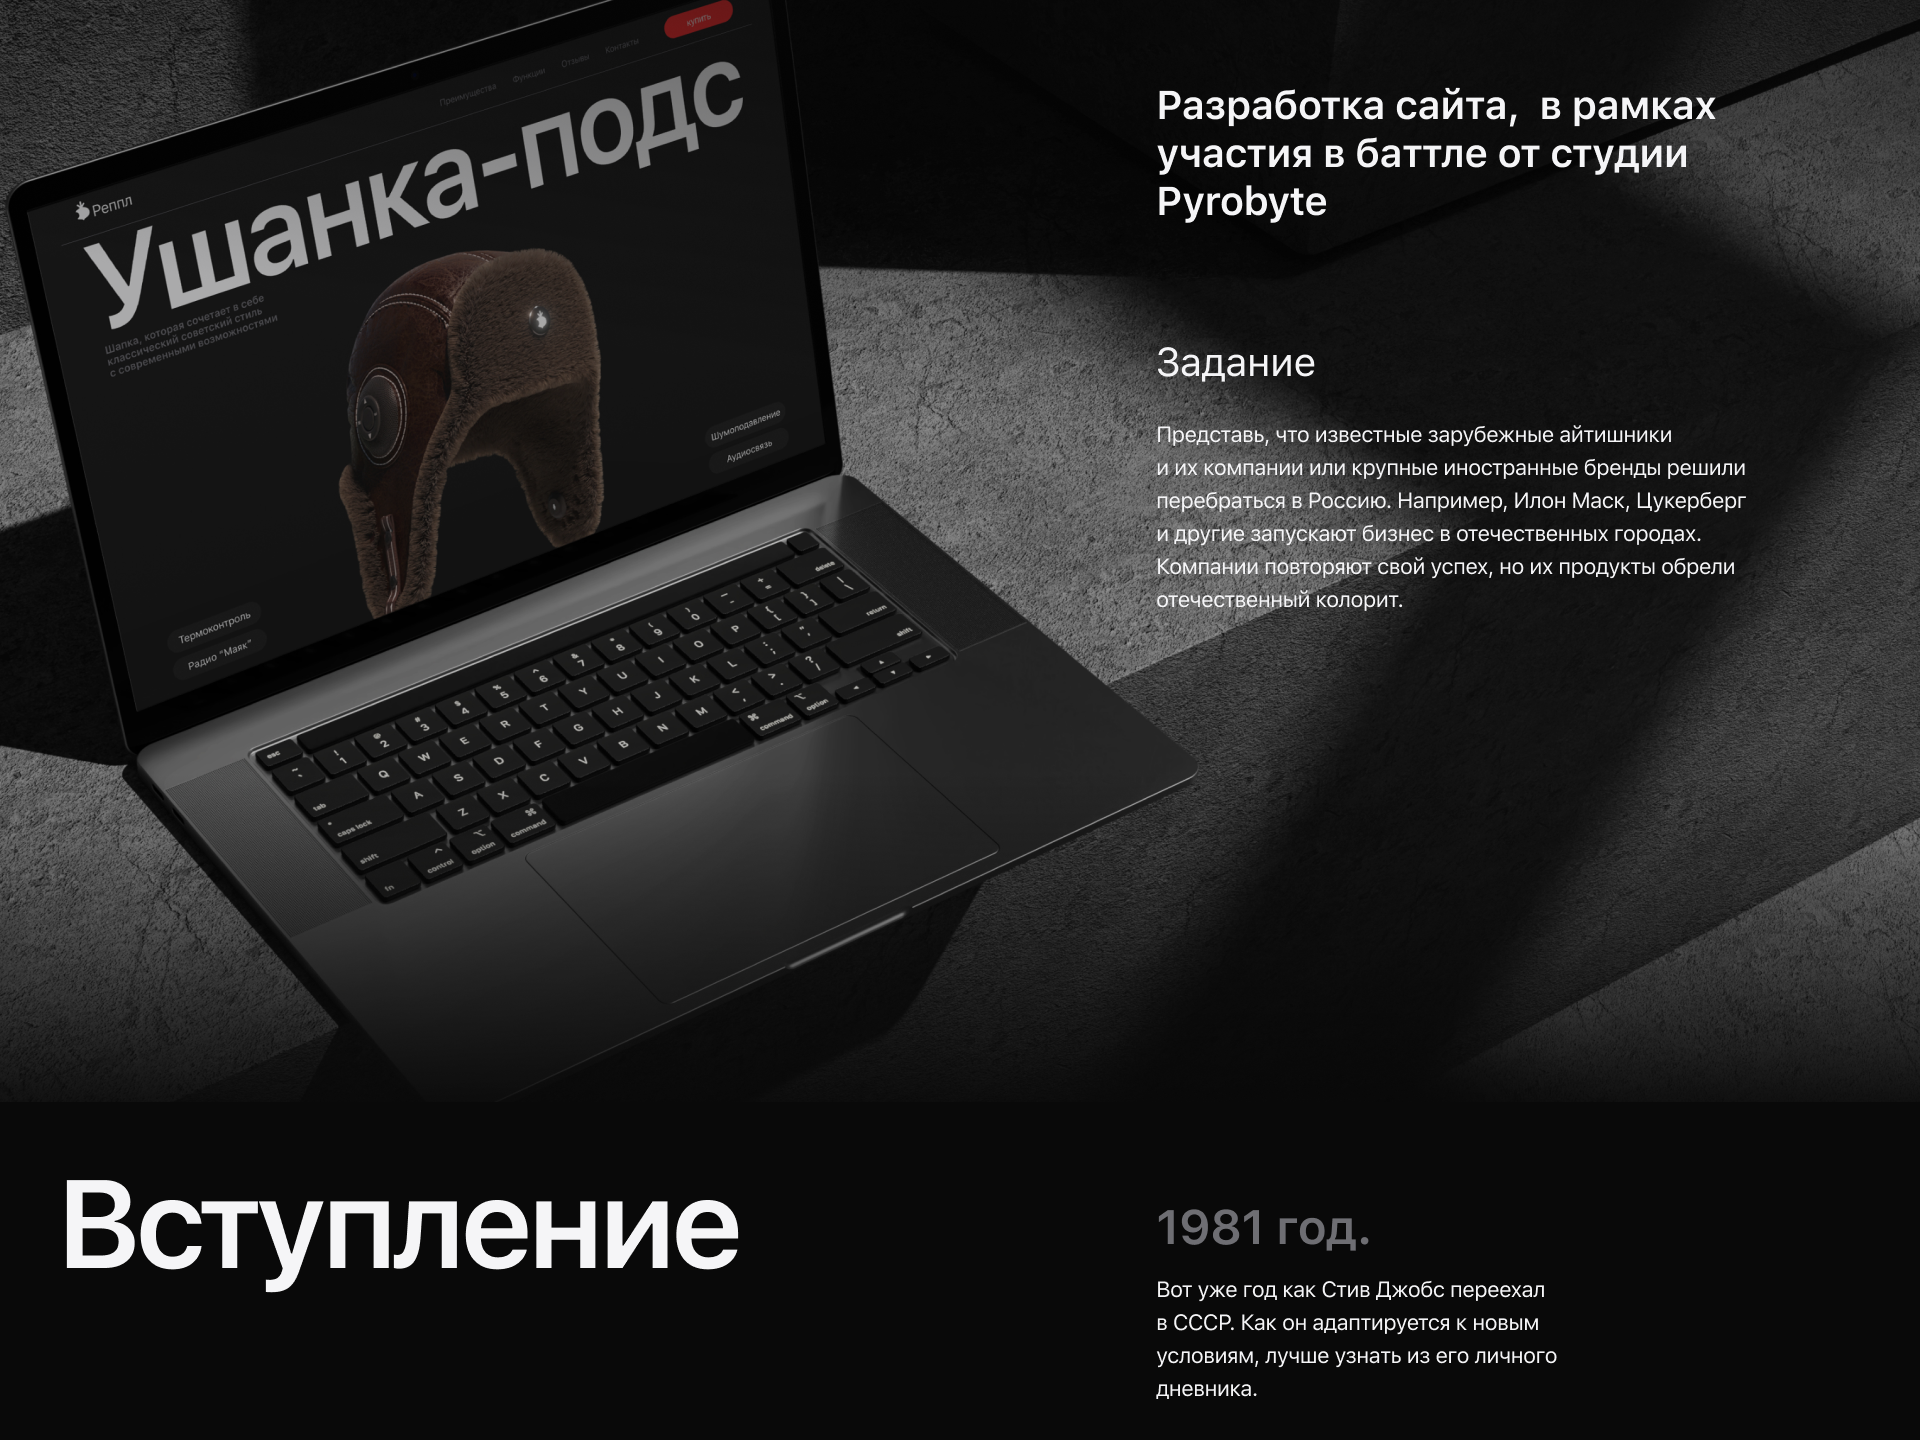 Дизайн промо-сайта / Pyrobattle — Изображение №1 — Интерфейсы, 3D на Dprofile